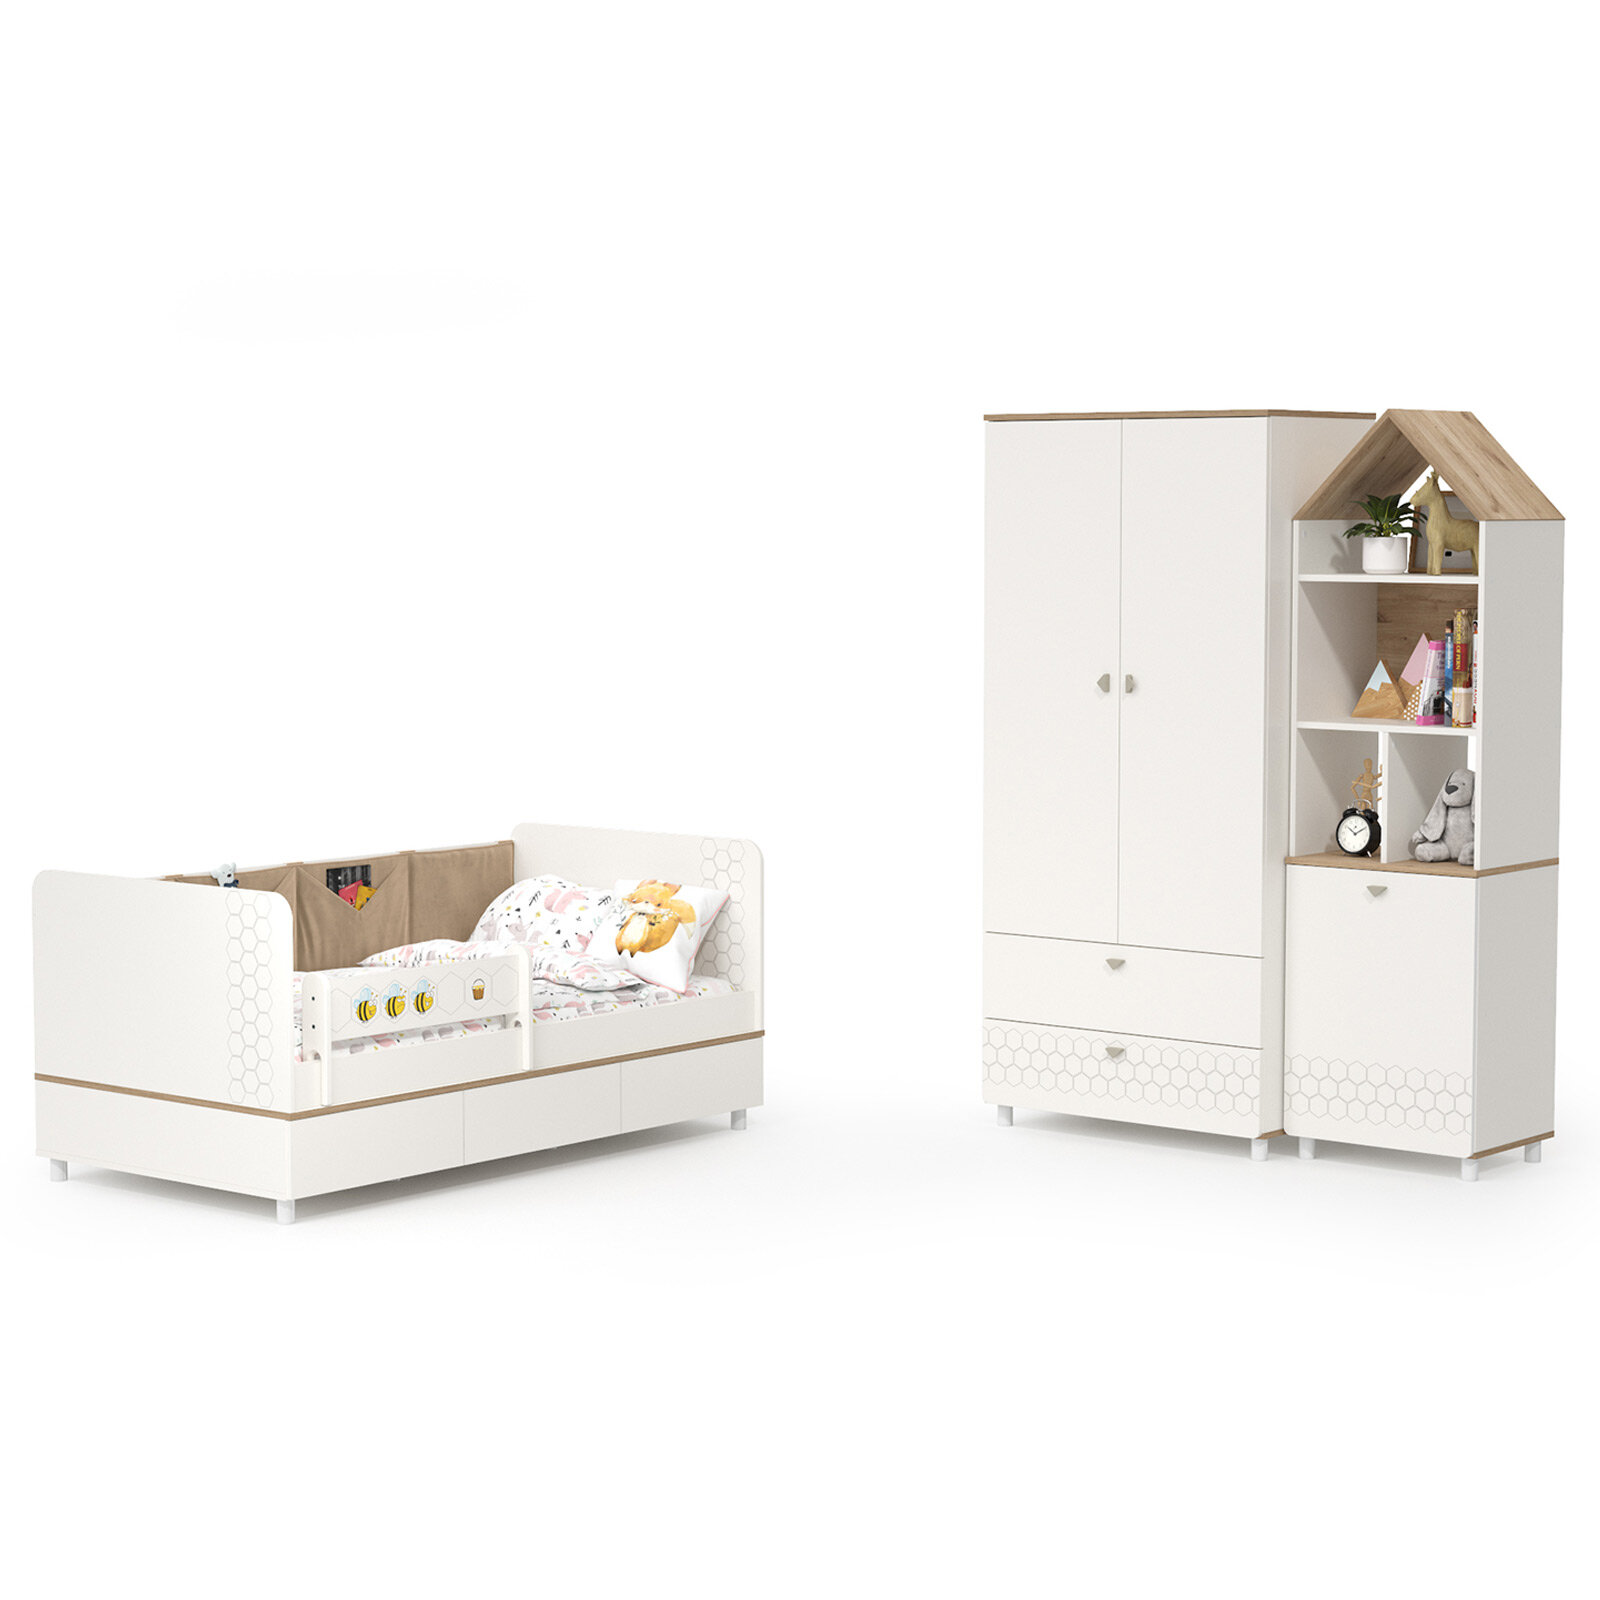 Мебель для детской Эйп-5 цвет белый/дуб белый спальное место 800х1600 мм без матраса